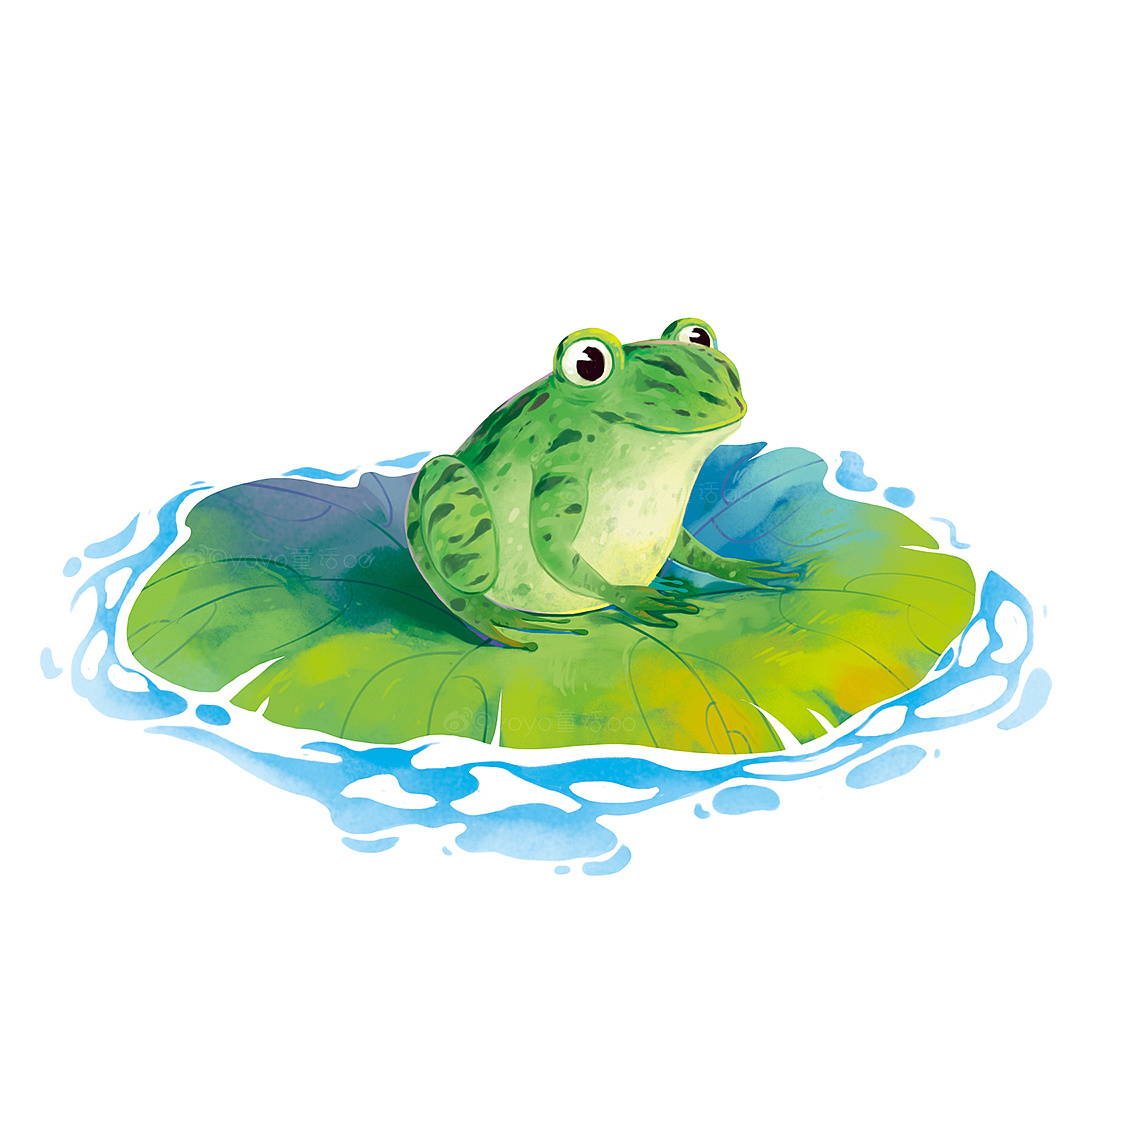 卡通手绘池塘青蛙设计素材免费下载 - 觅知网